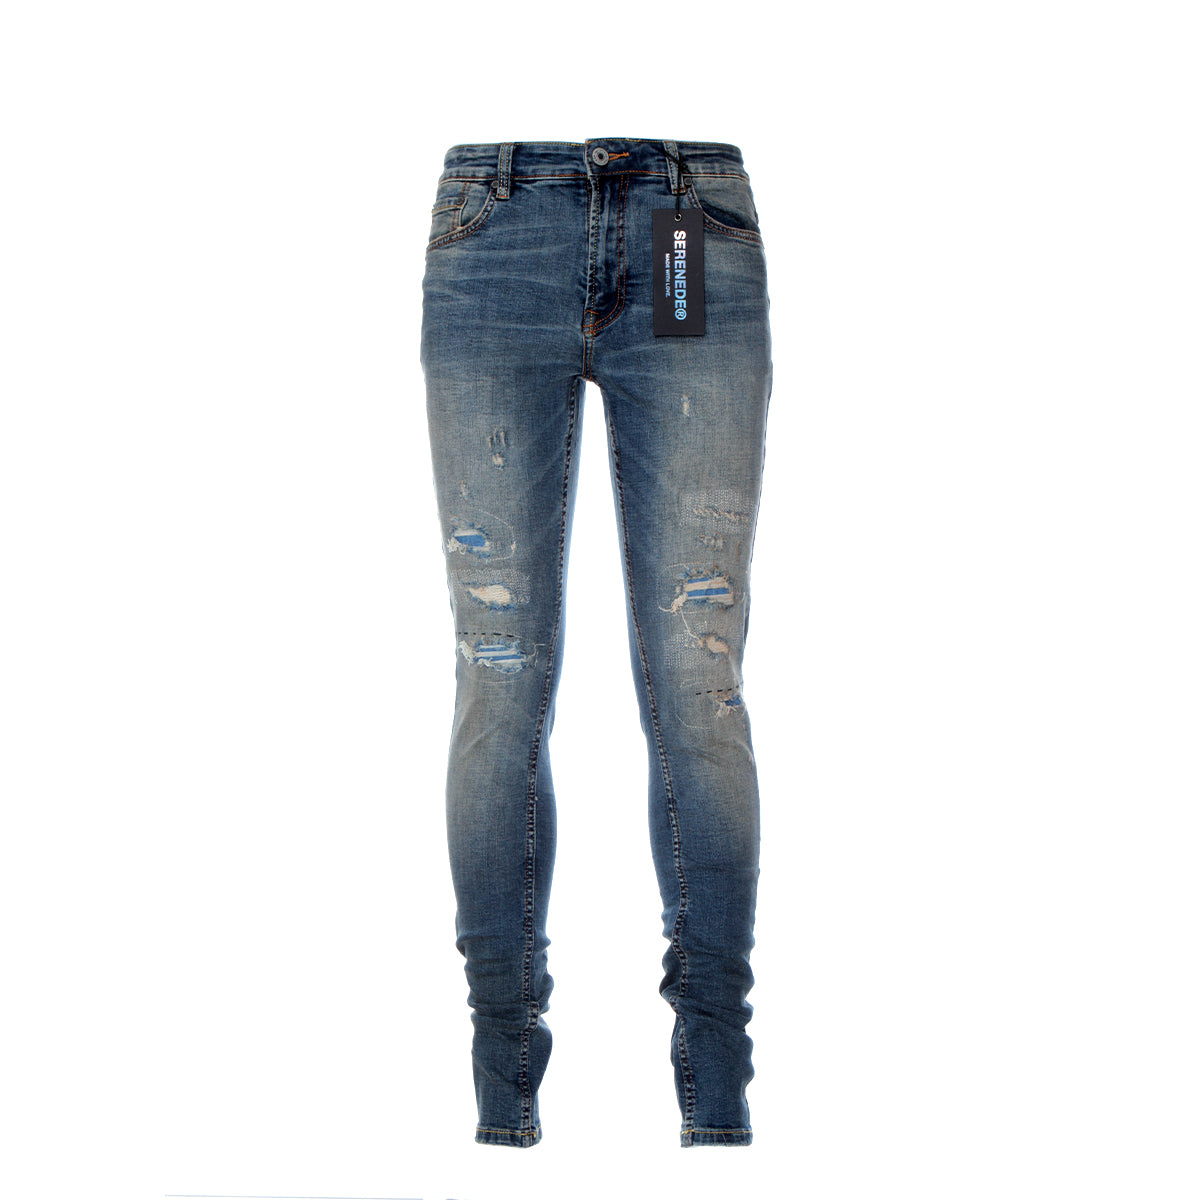 Serenede Architect 22 Men's Skinny Designer Jeans